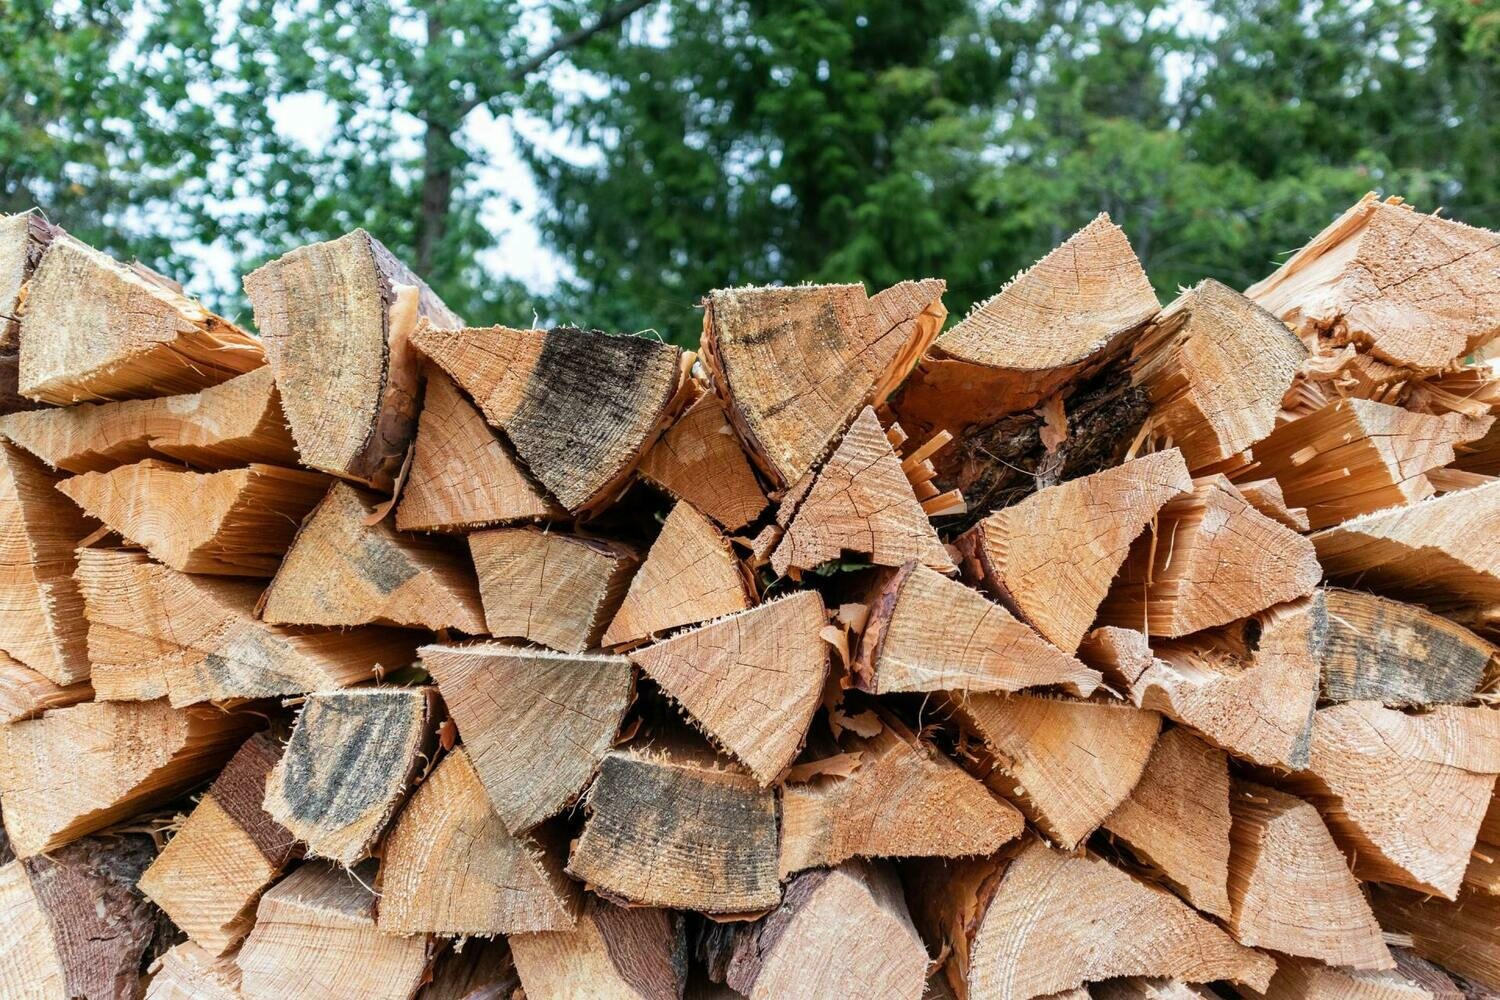 Seasoned firewood